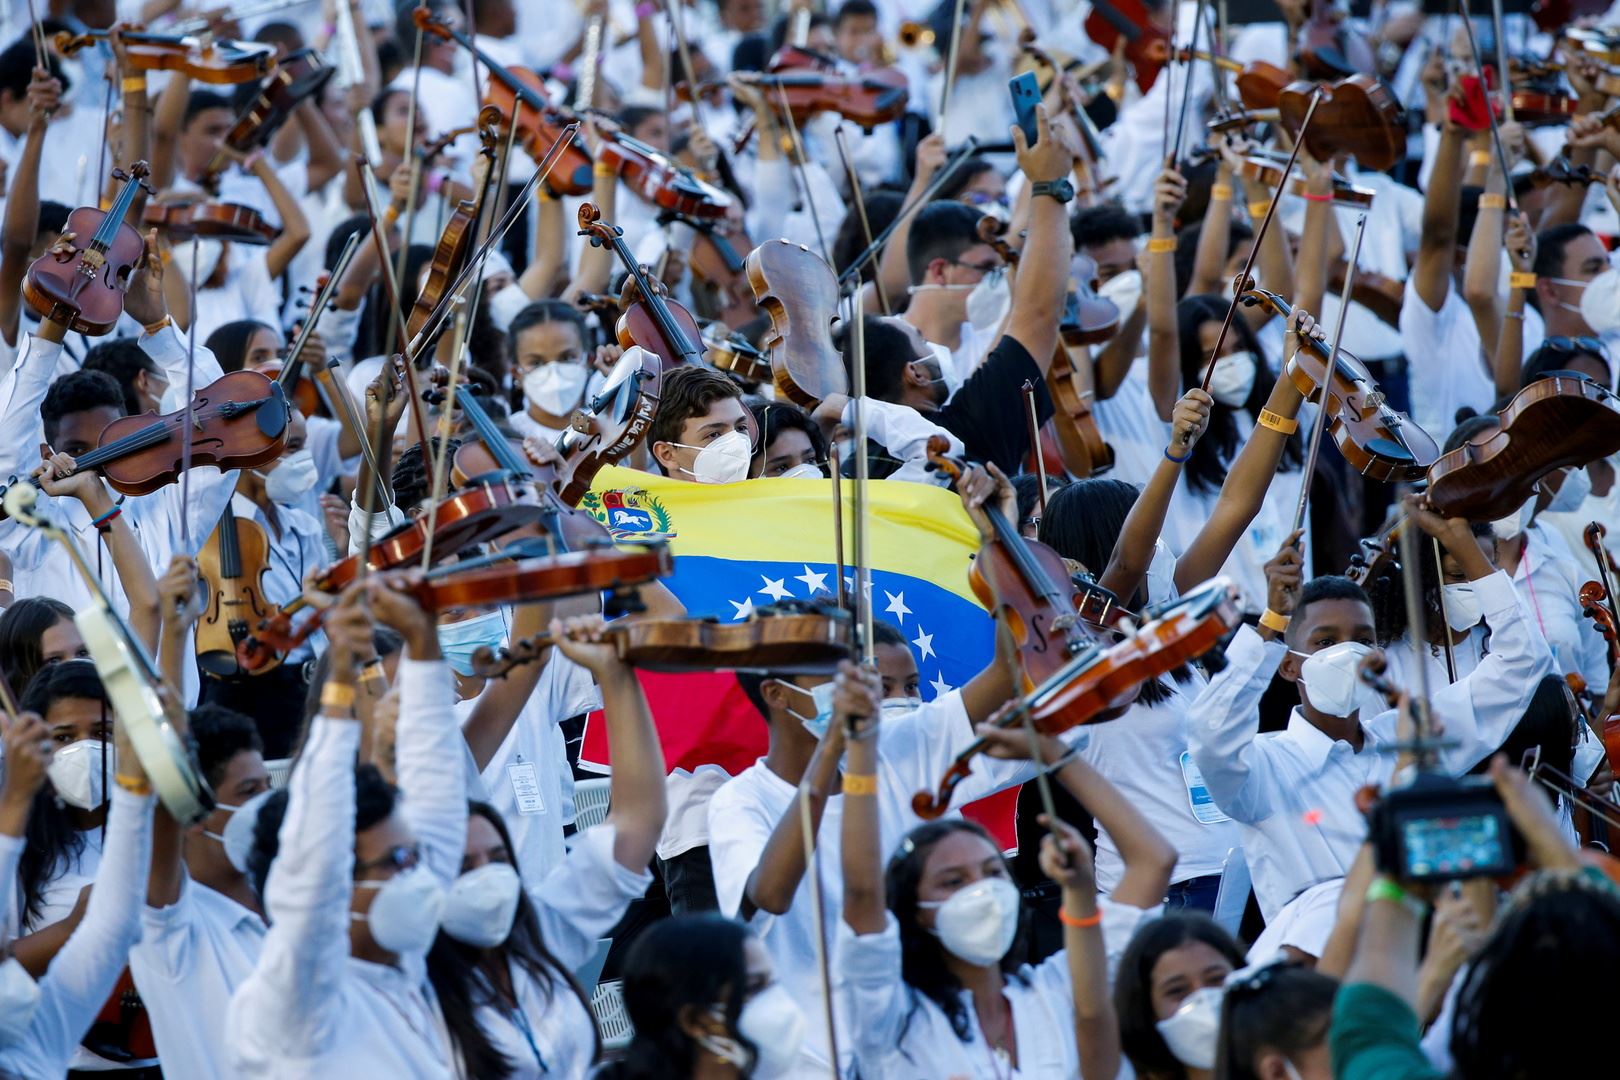 في فنزويلا .. أكبر أوركسترا في العالم تحطم أرقام "غينيس"!